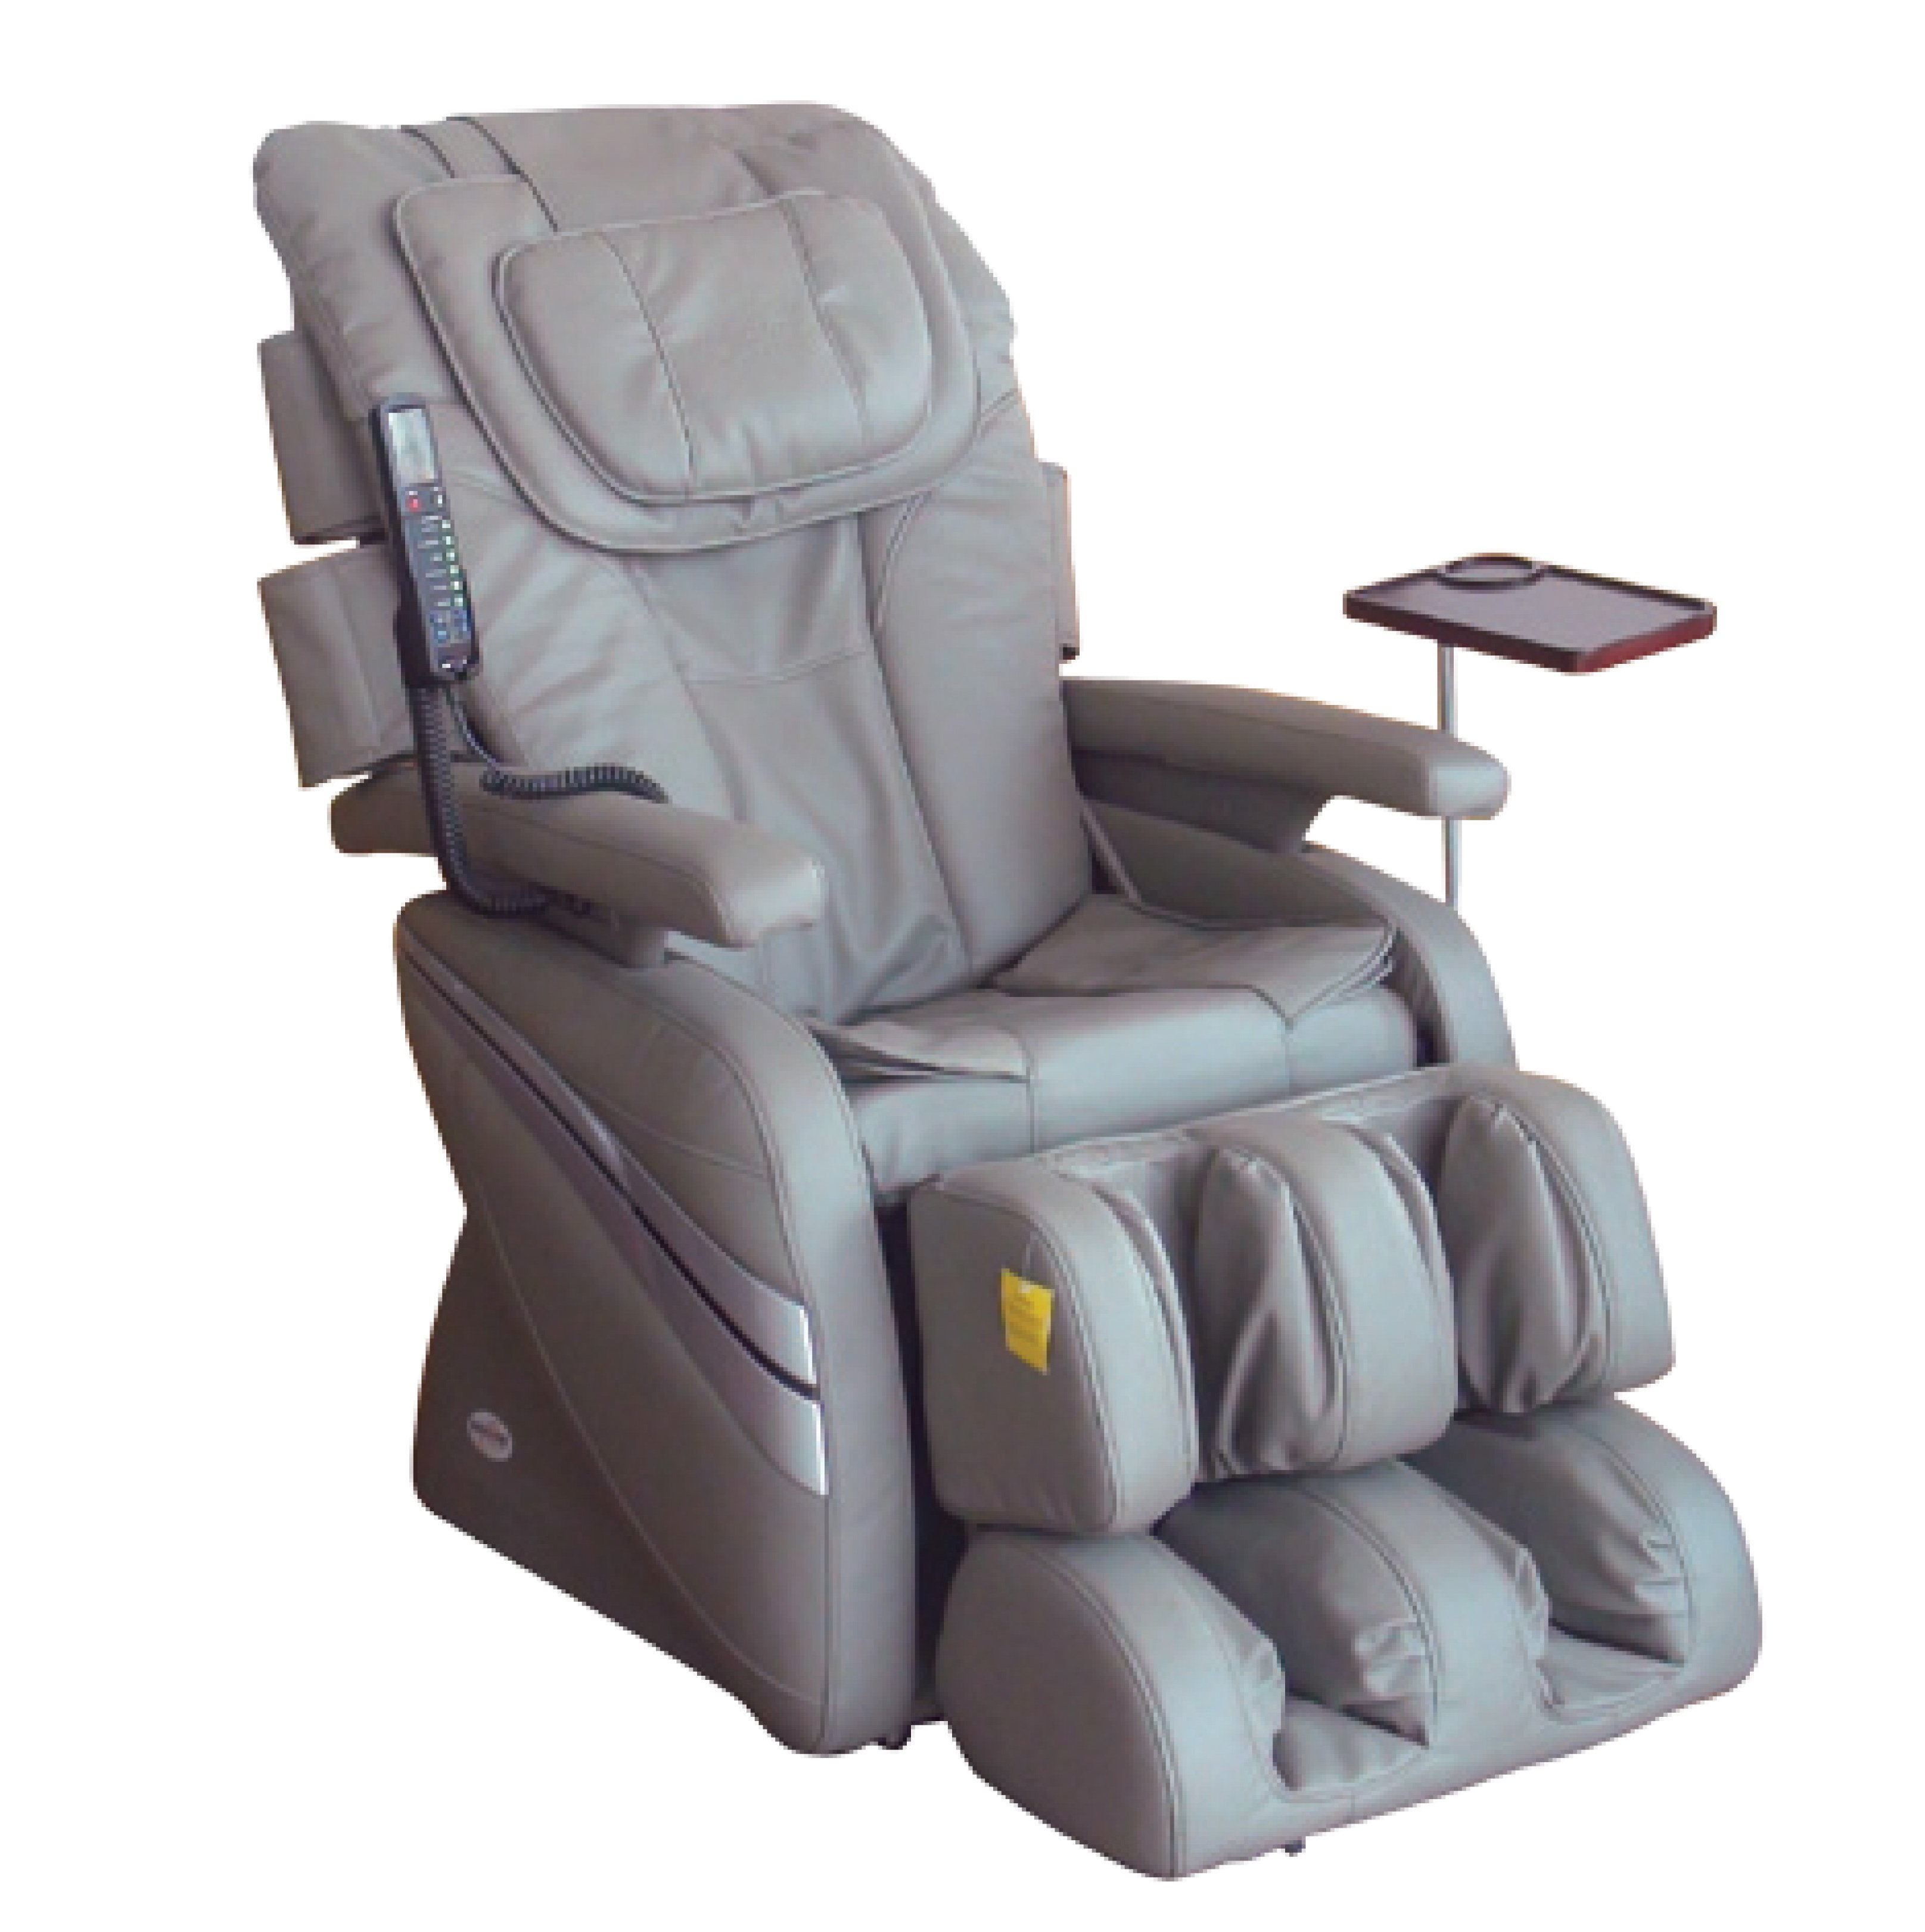 Bảo quản và vệ sinh ghế massage